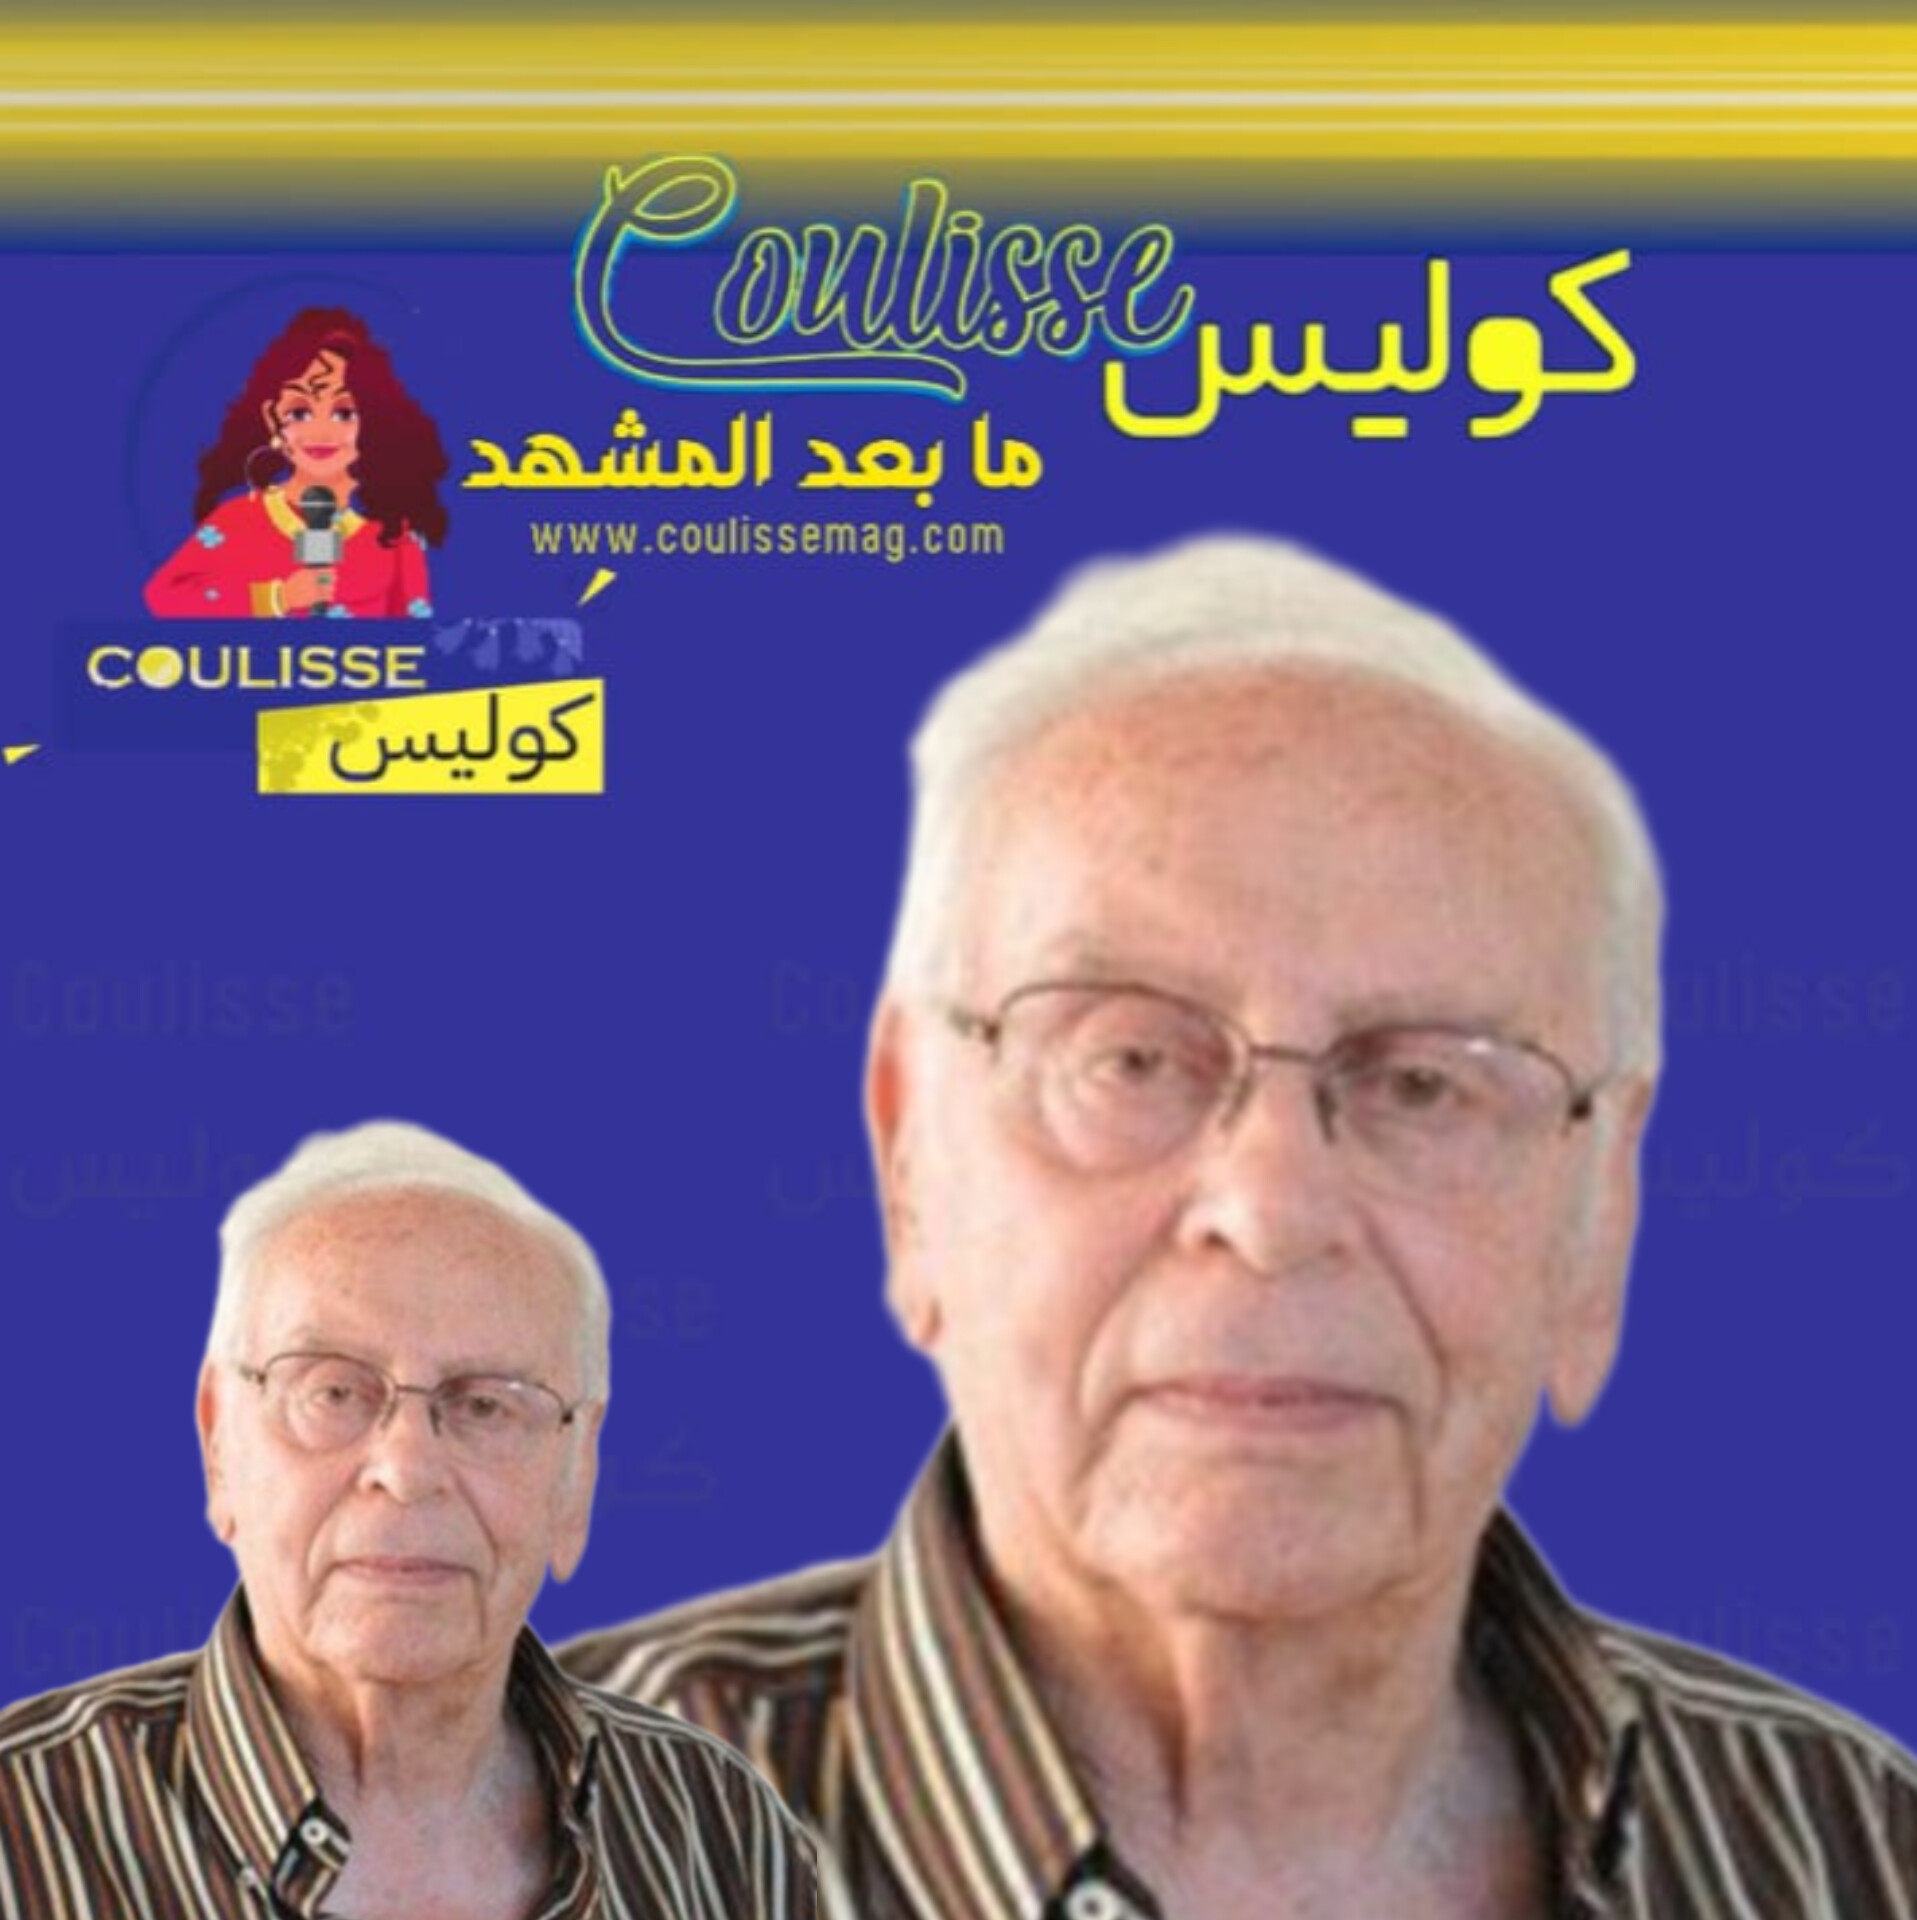 الدراما اللبنانية تودع عميد الممثلين اللبنانيين محمد الكبي!